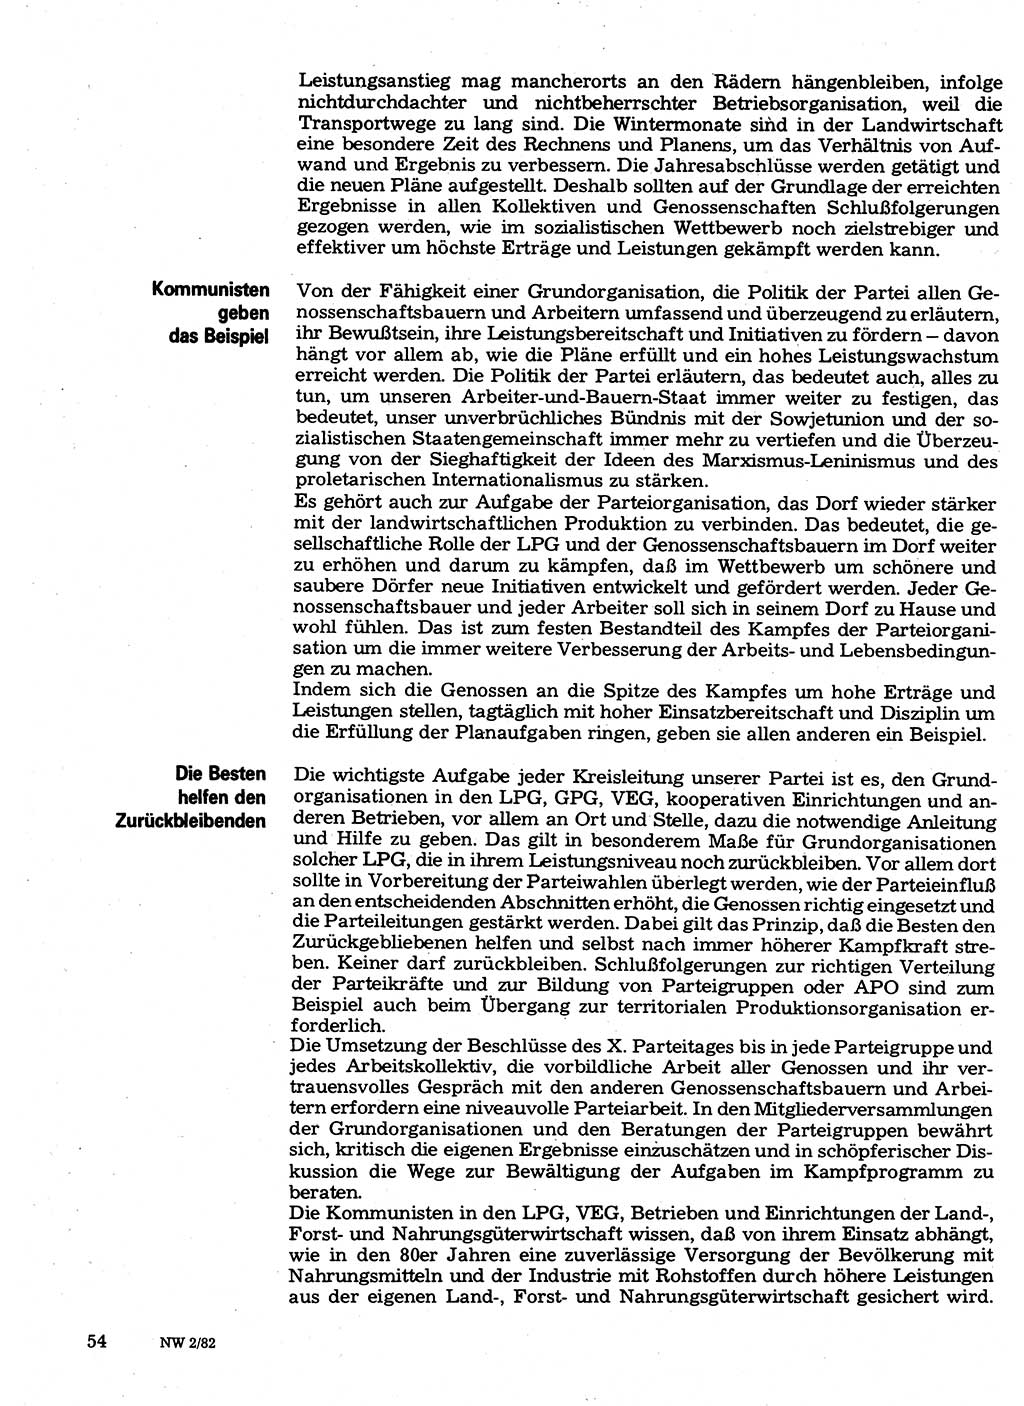 Neuer Weg (NW), Organ des Zentralkomitees (ZK) der SED (Sozialistische Einheitspartei Deutschlands) für Fragen des Parteilebens, 37. Jahrgang [Deutsche Demokratische Republik (DDR)] 1982, Seite 54 (NW ZK SED DDR 1982, S. 54)